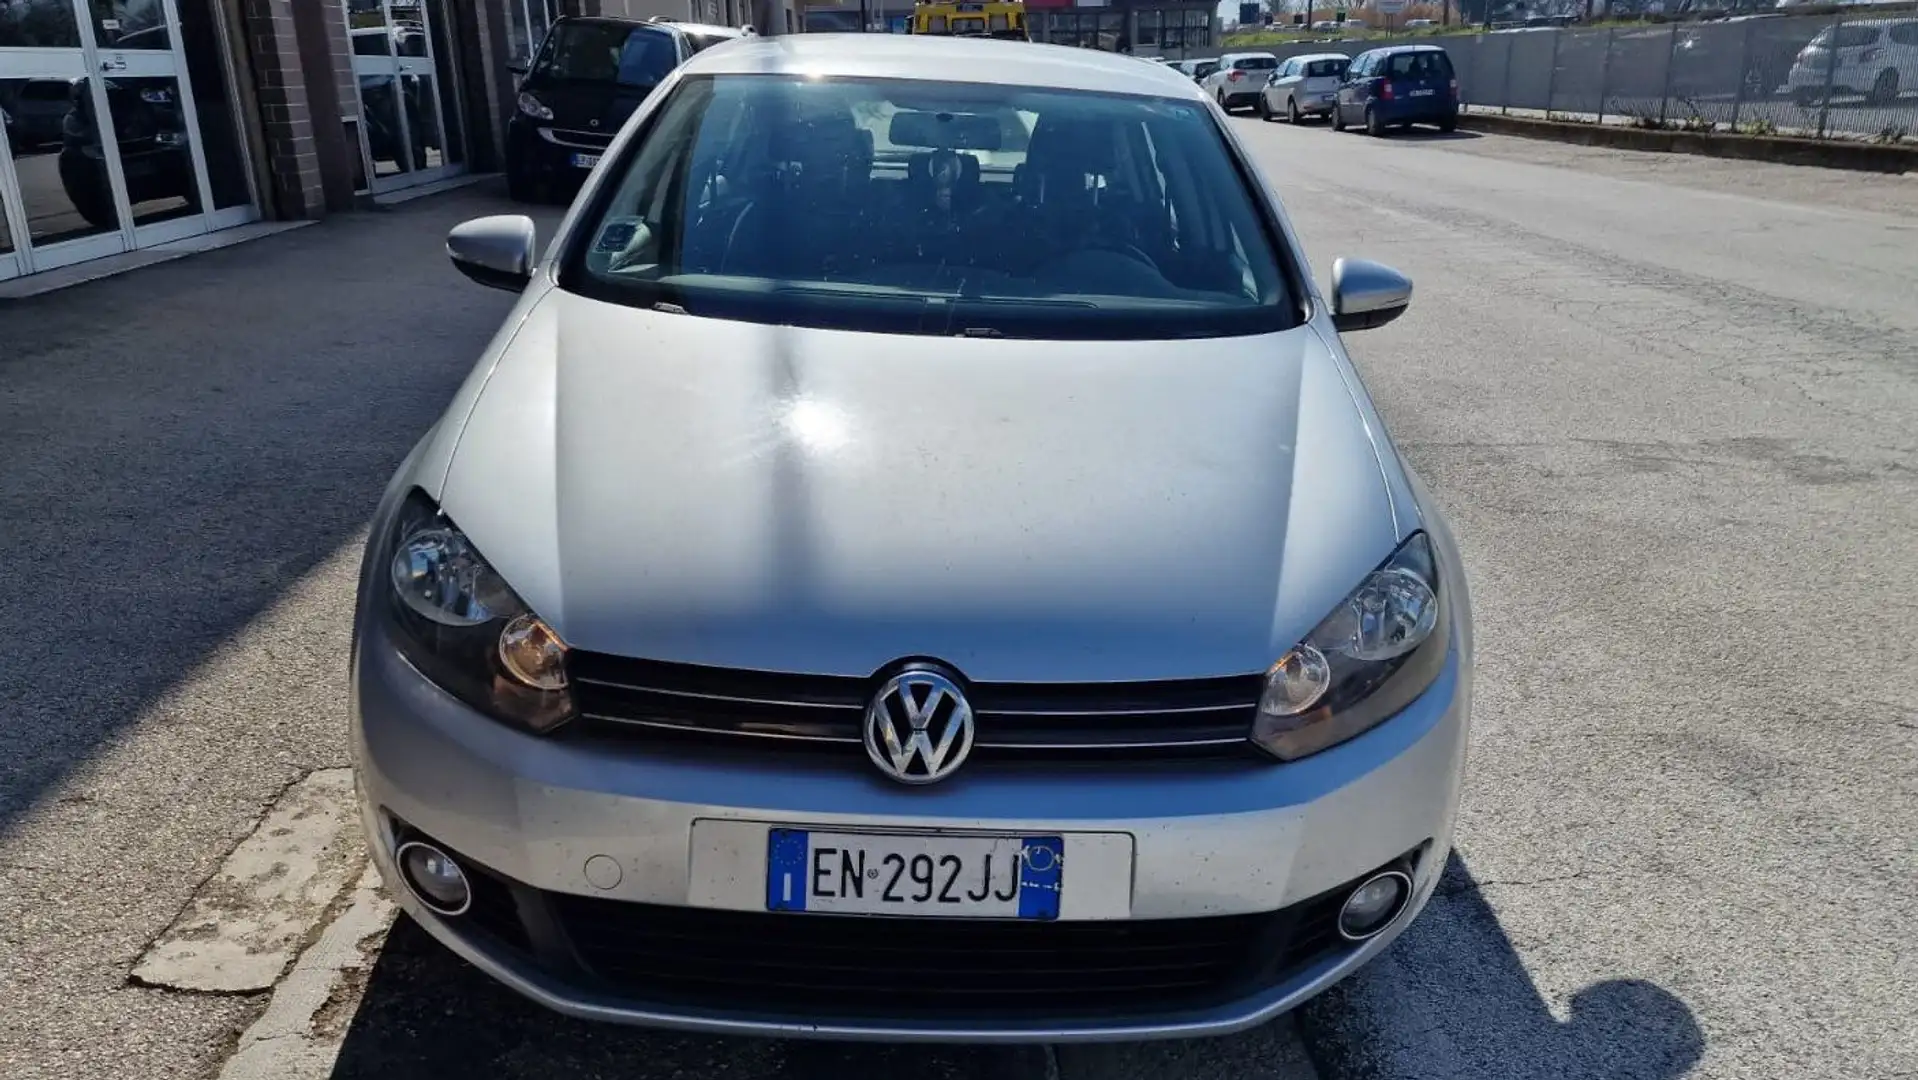 usato Volkswagen Golf Berlina a Porto Sant'Elpidio - Ascoli Piceno - Ap per  € 7.800,-